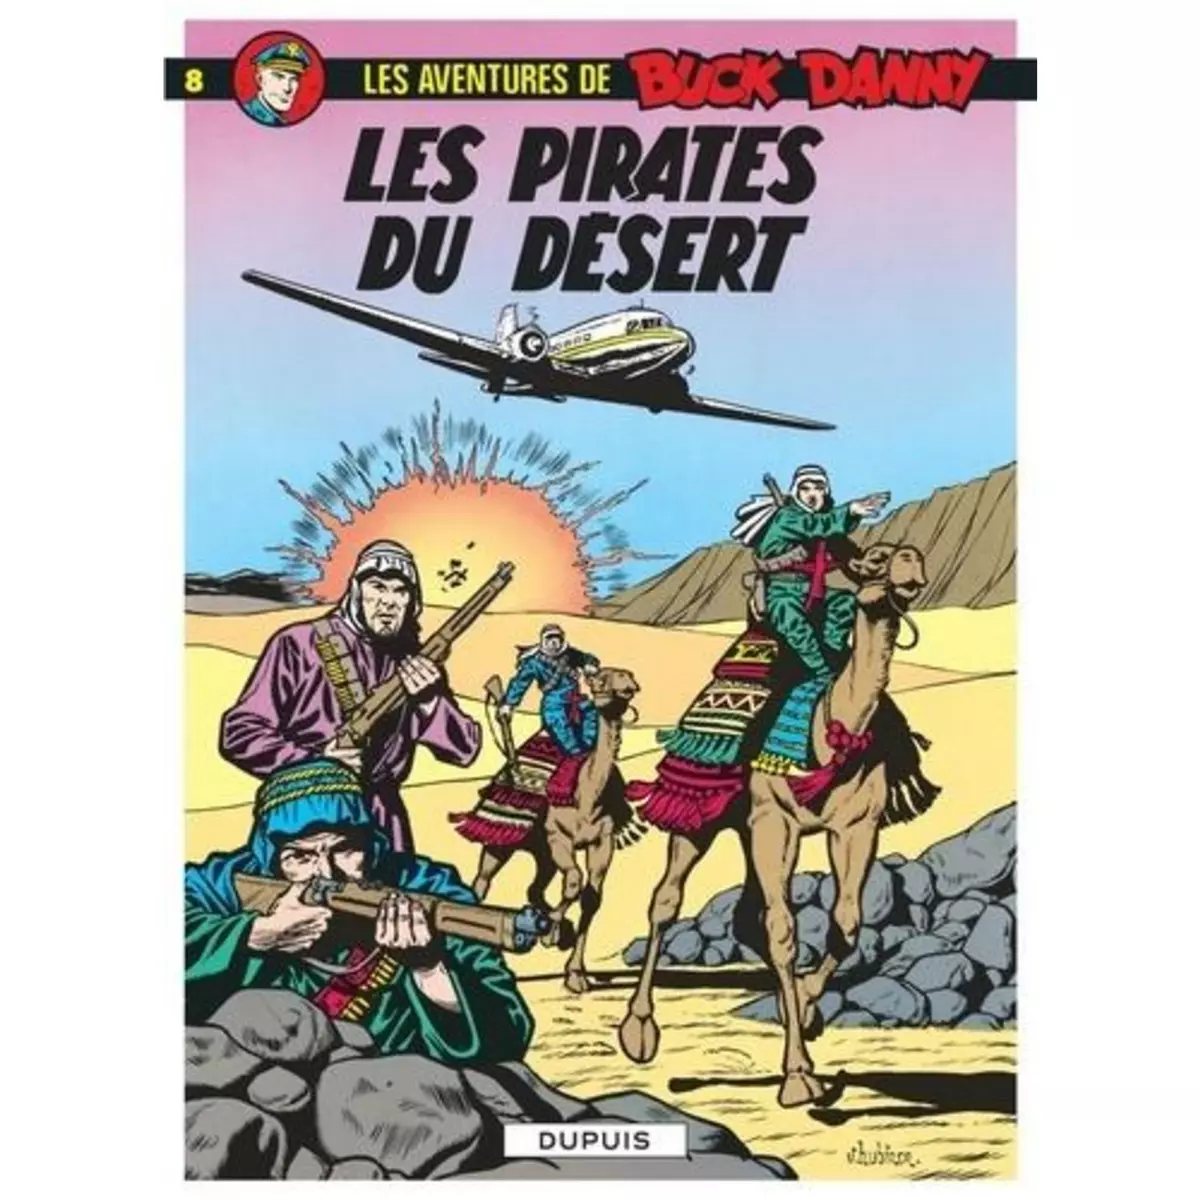  LES AVENTURES DE BUCK DANNY TOME 8 : LES PIRATES DU DESERT, Charlier Jean-Michel